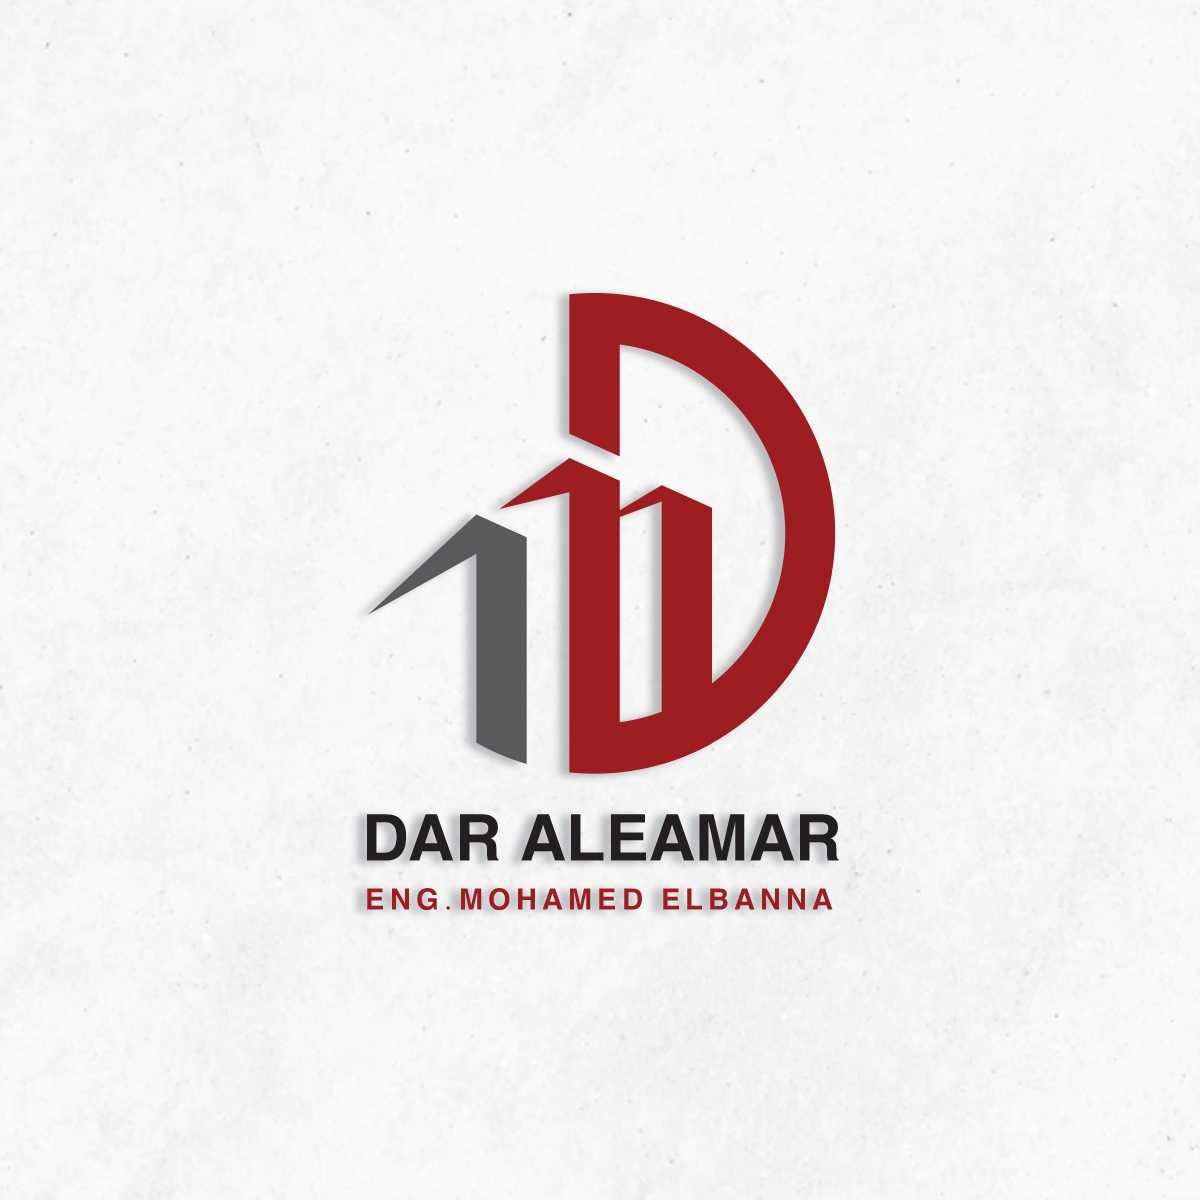 Dar Al-Eamar